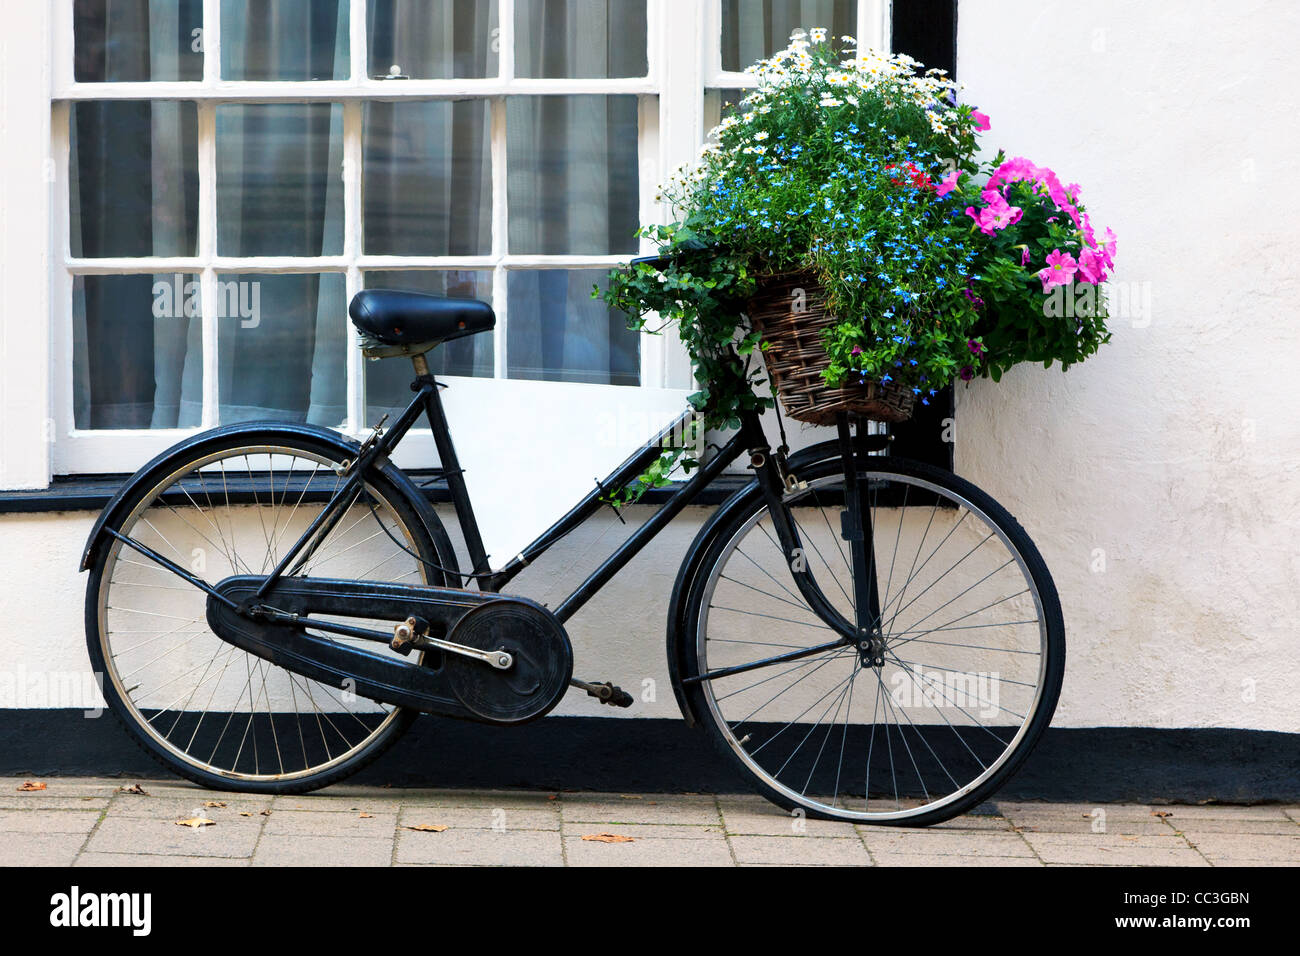 Photo d'un vieux vélo avec un panier rempli de fleurs et d'un panneau publicitaire vide dans le cadre. Banque D'Images